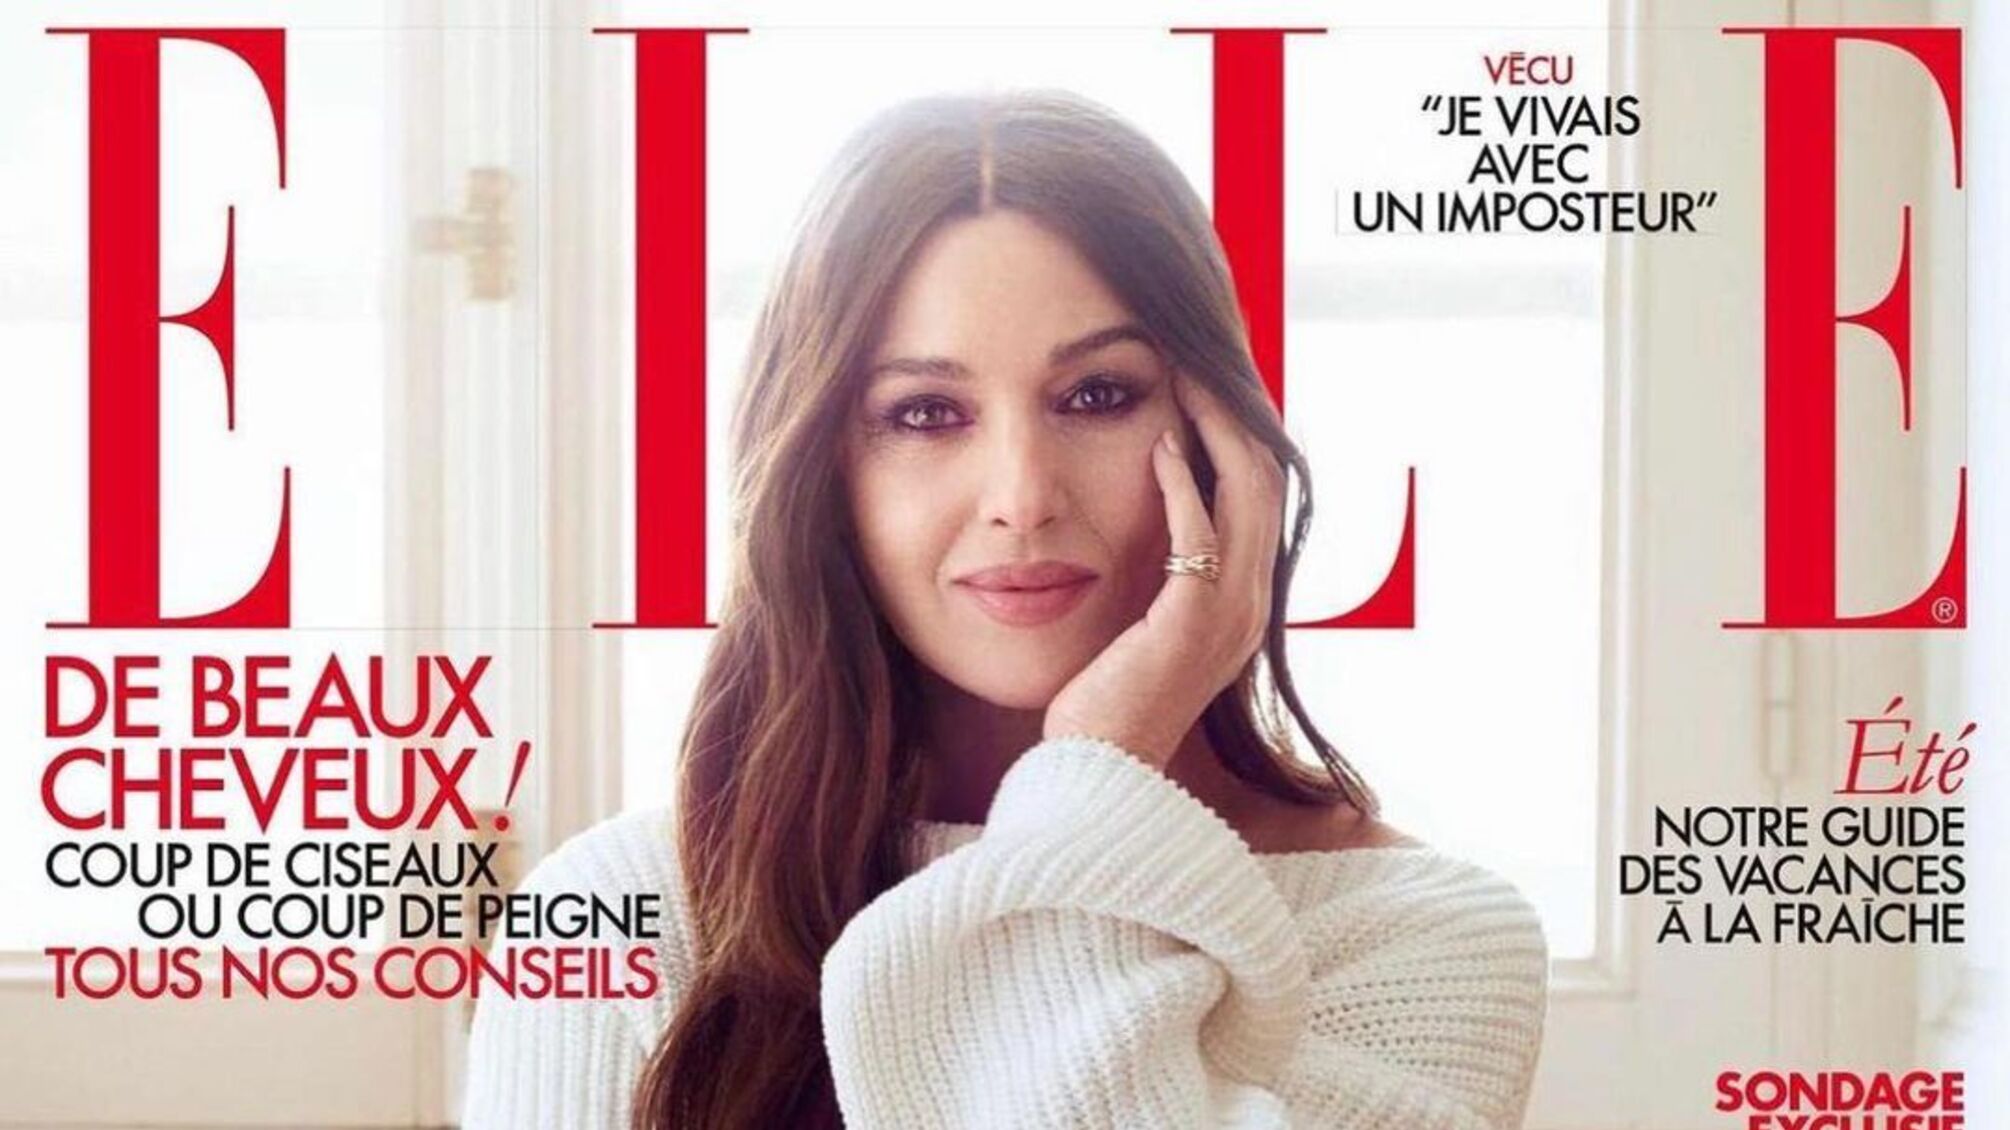 Моніка Беллуччі показала нову обкладинку нового Elle до виходу журналу